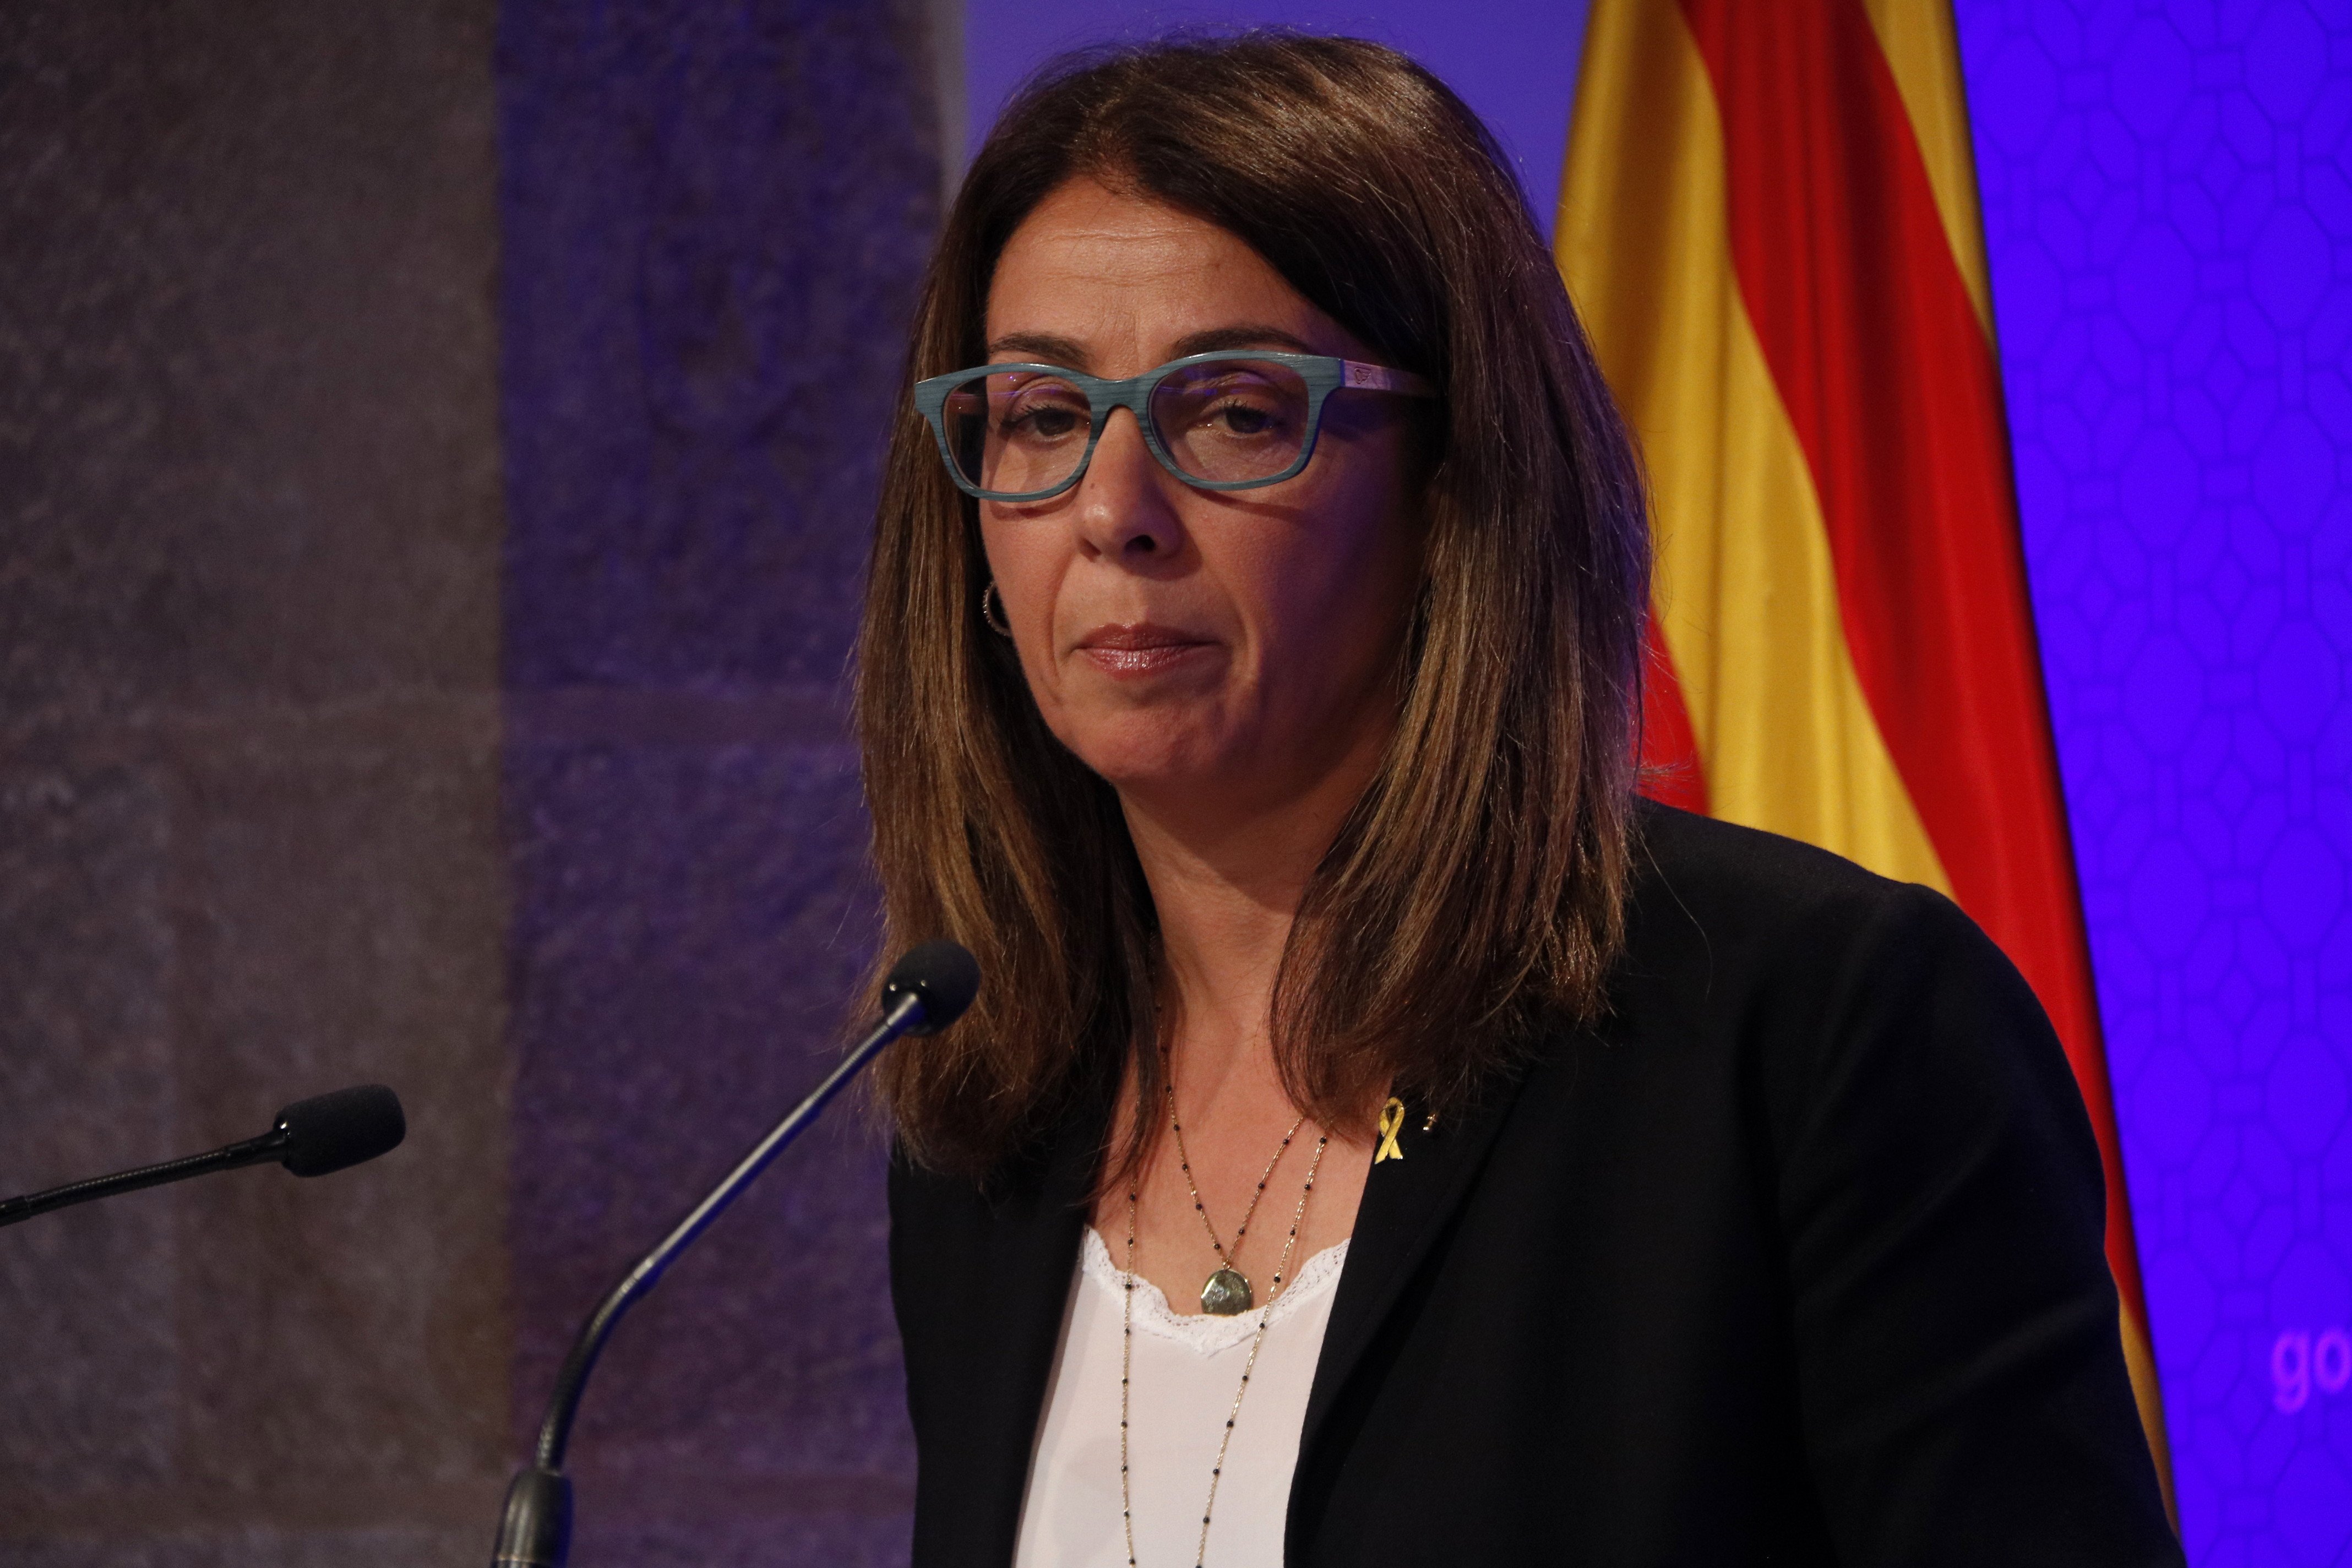 El Govern demana reunions a l'executiu espanyol per aclarir els dubtes sobre el CNI i el 17-A